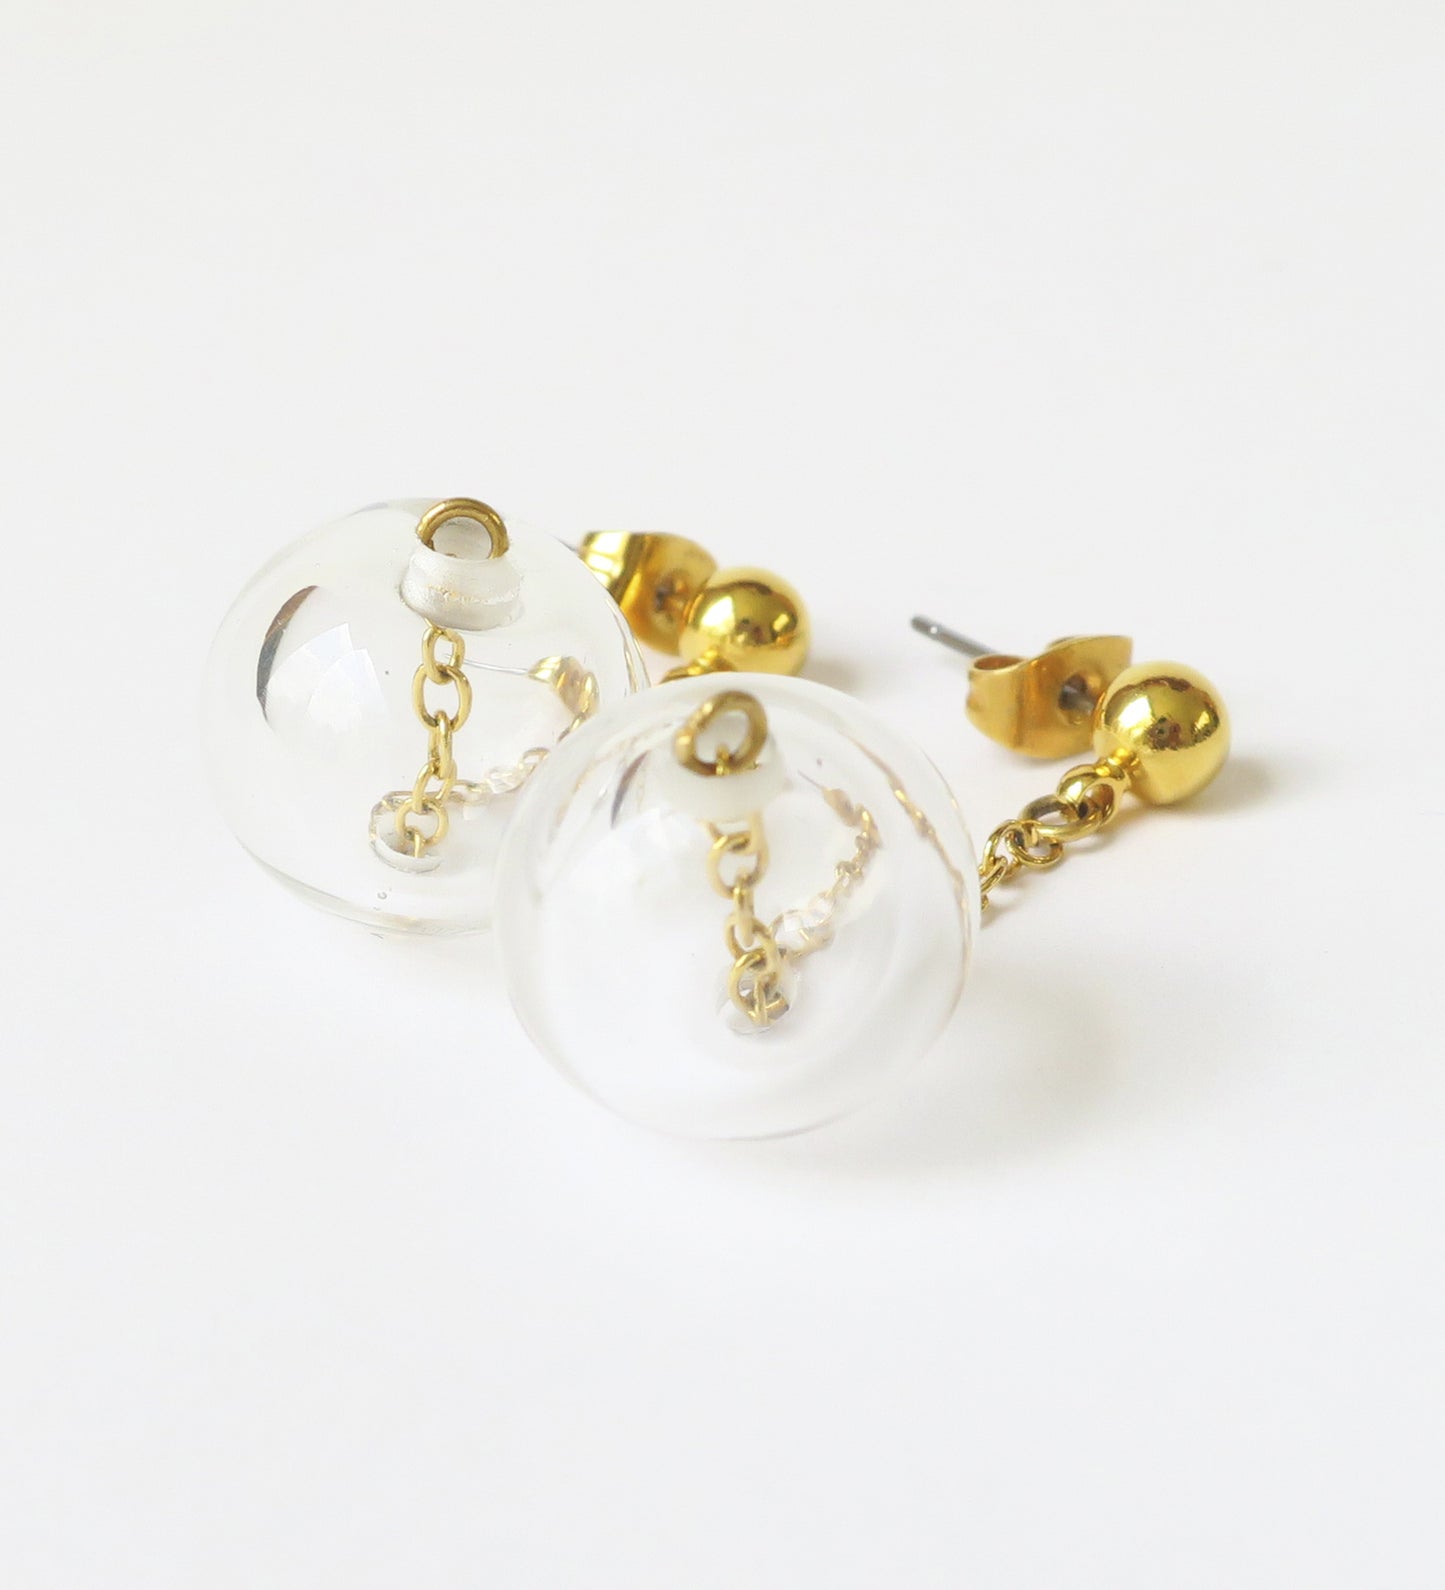 Sphere earrings